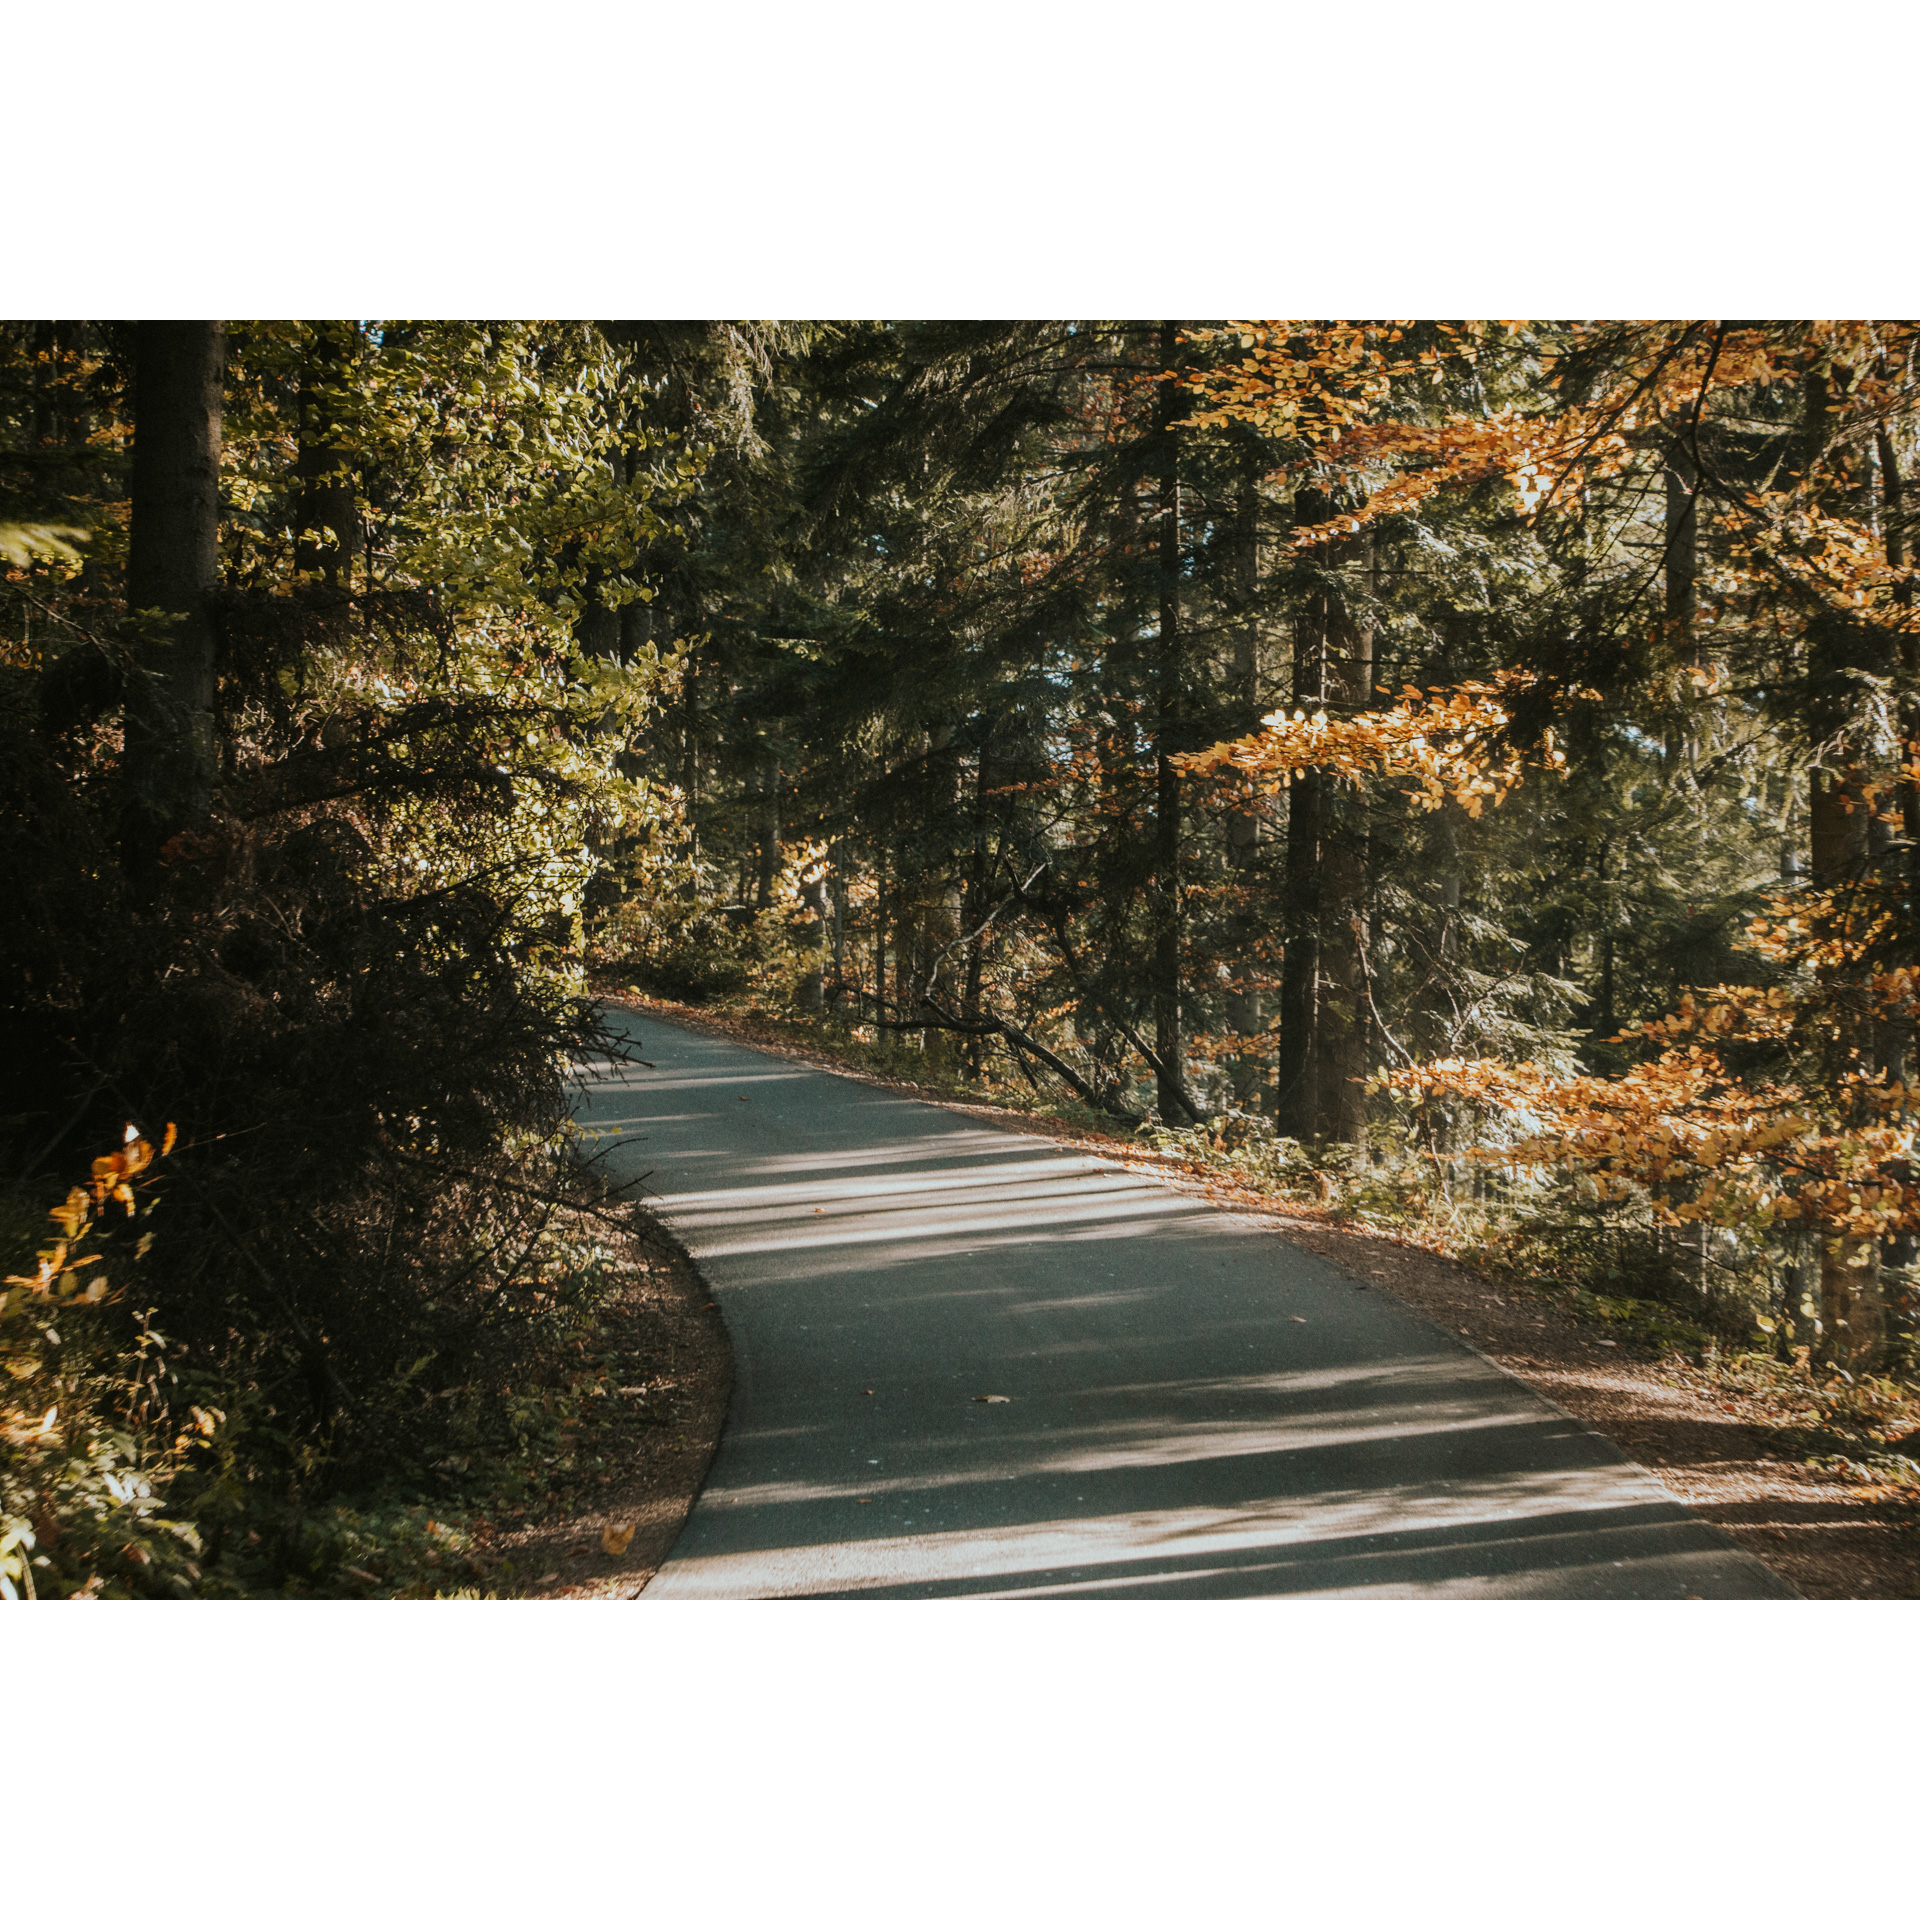 An asphalt road running through the forest